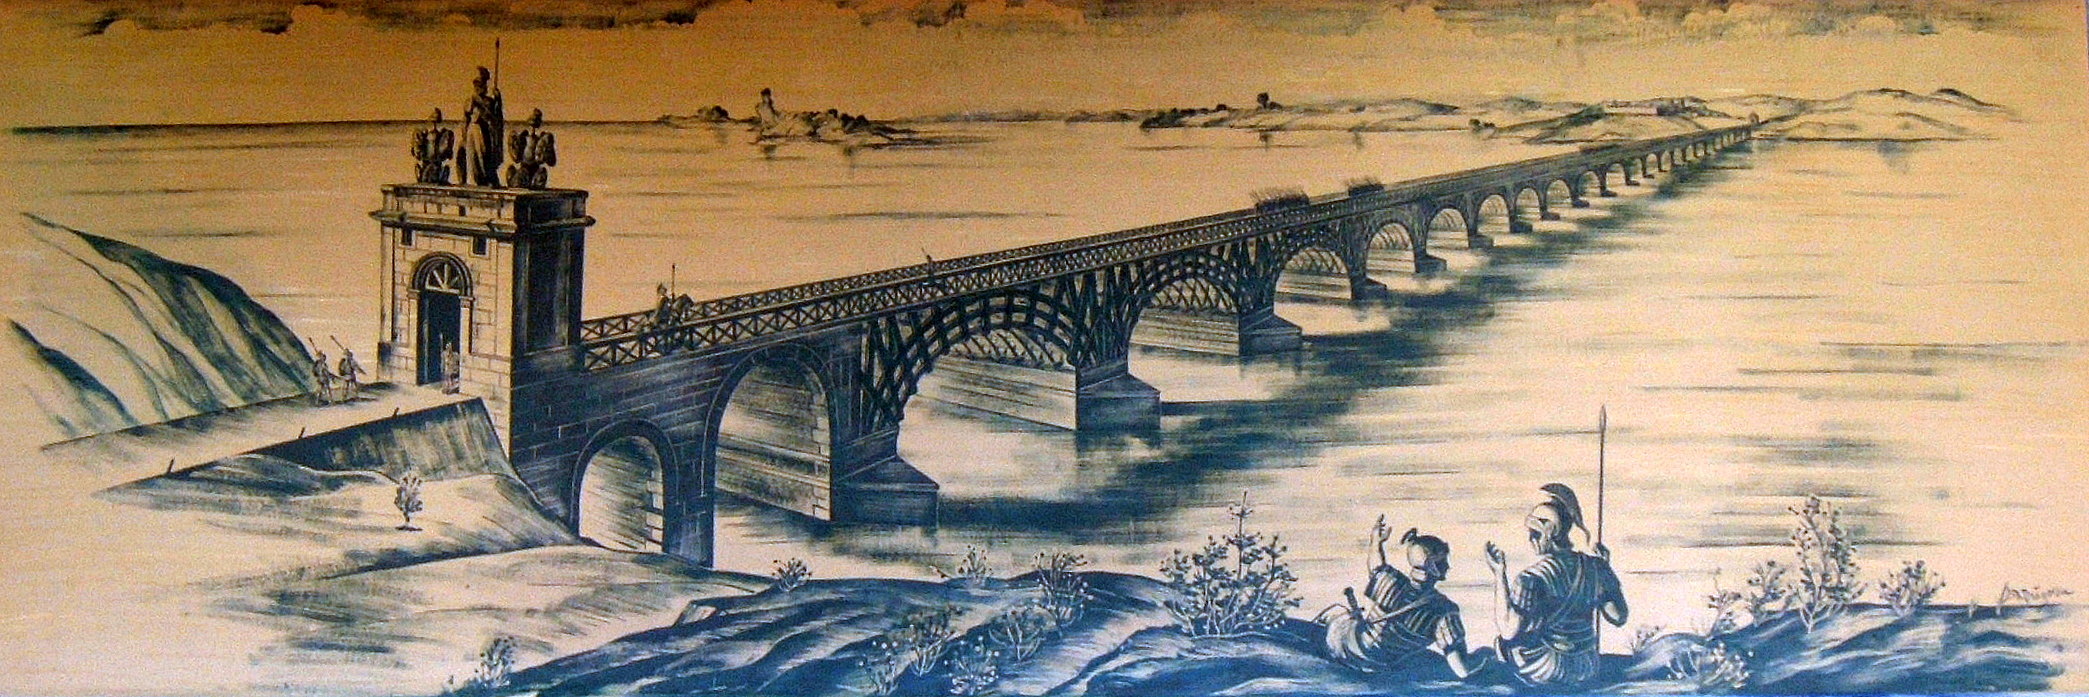 The Trajans bridge over the Danube river.